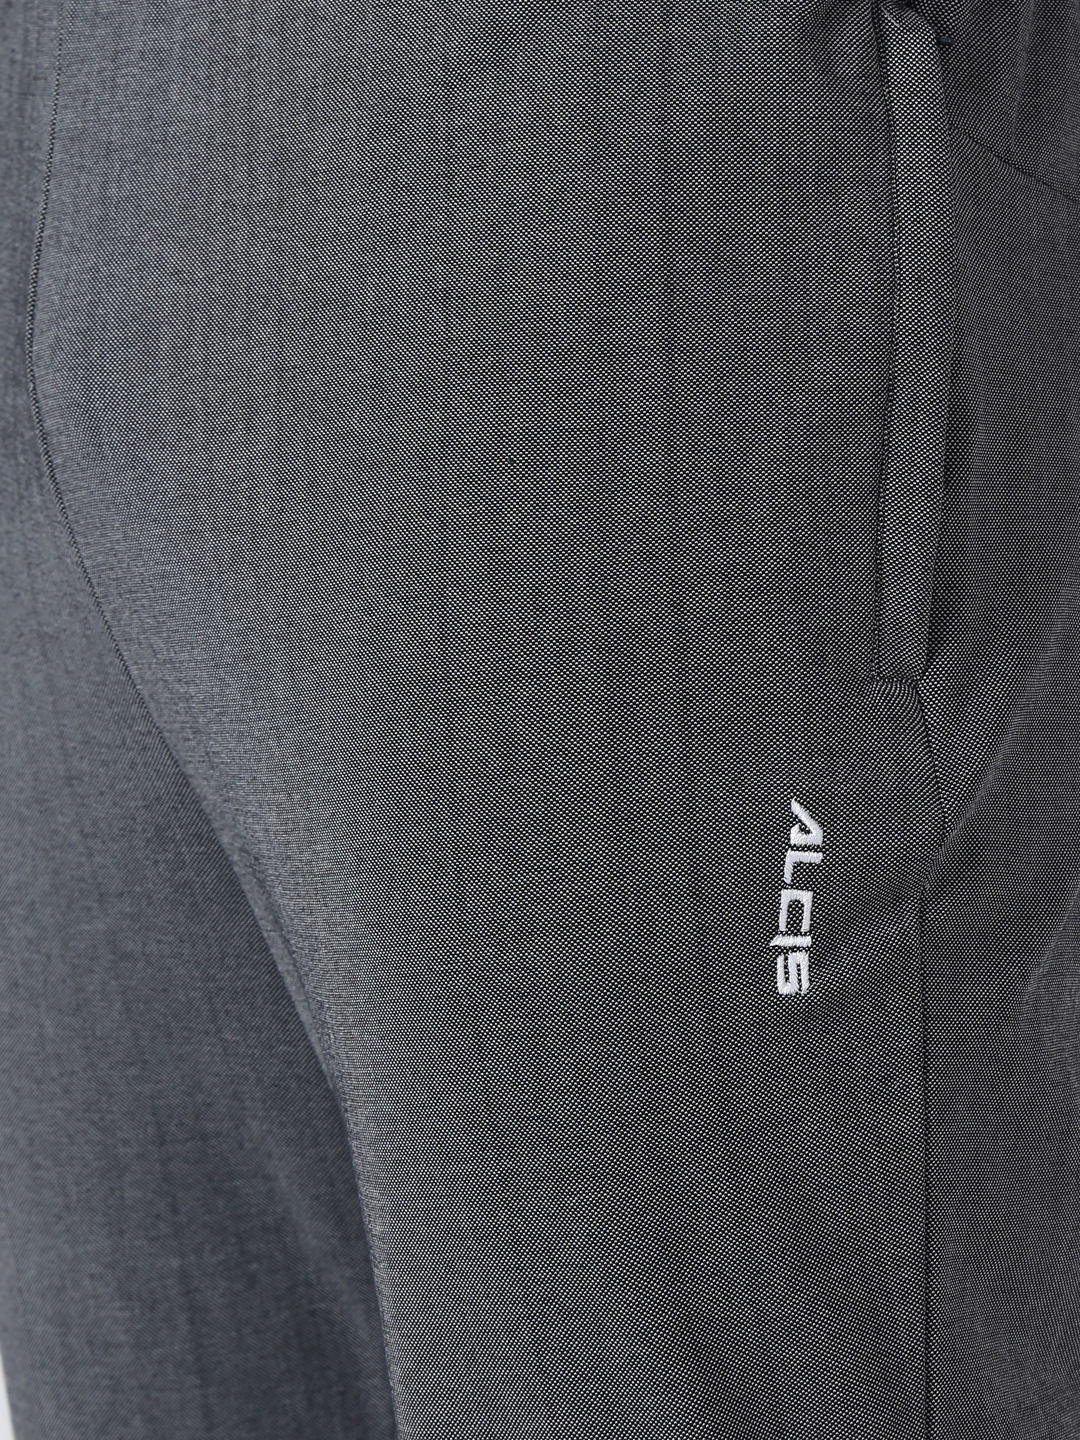 Men Grey Printed Track Pant